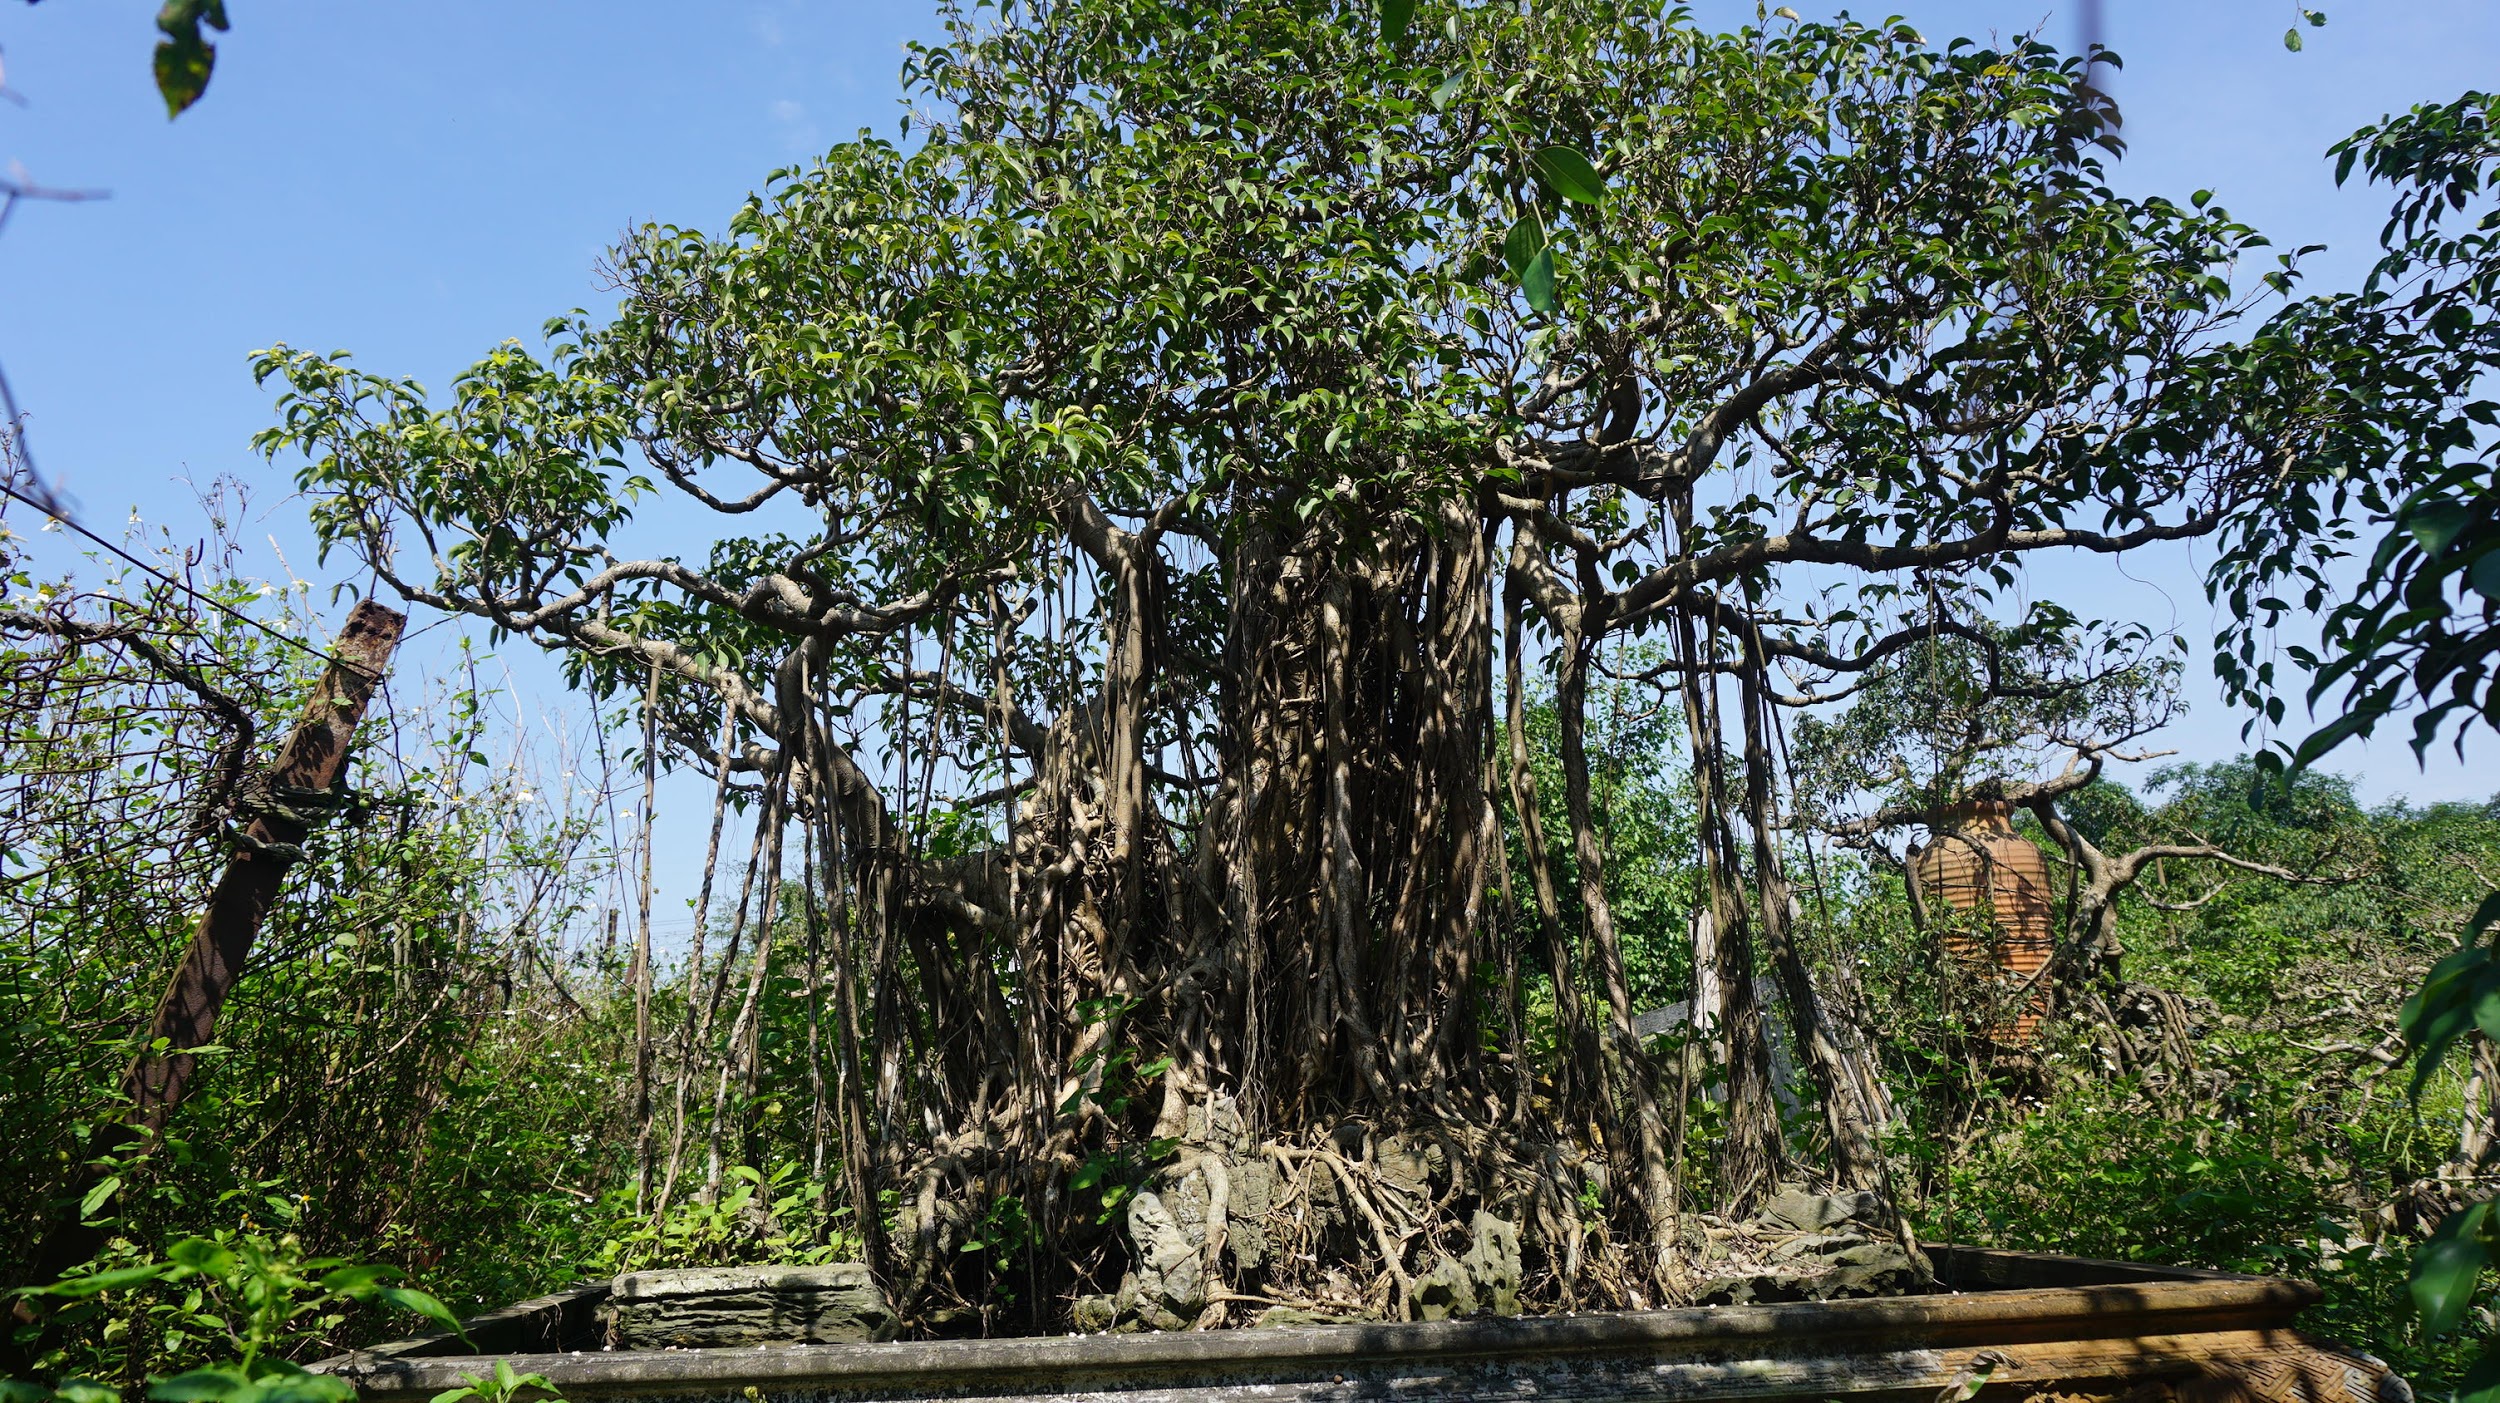 Khu vườn bỏ hoang toàn 'siêu cây' bạc tỷ của đại gia nức tiếng một thời Hang-chuc-goc-co-thu-dang-than-dang-phat-gia-tram-ty-bo-hoang-o-ha-noidocx-1588065447999